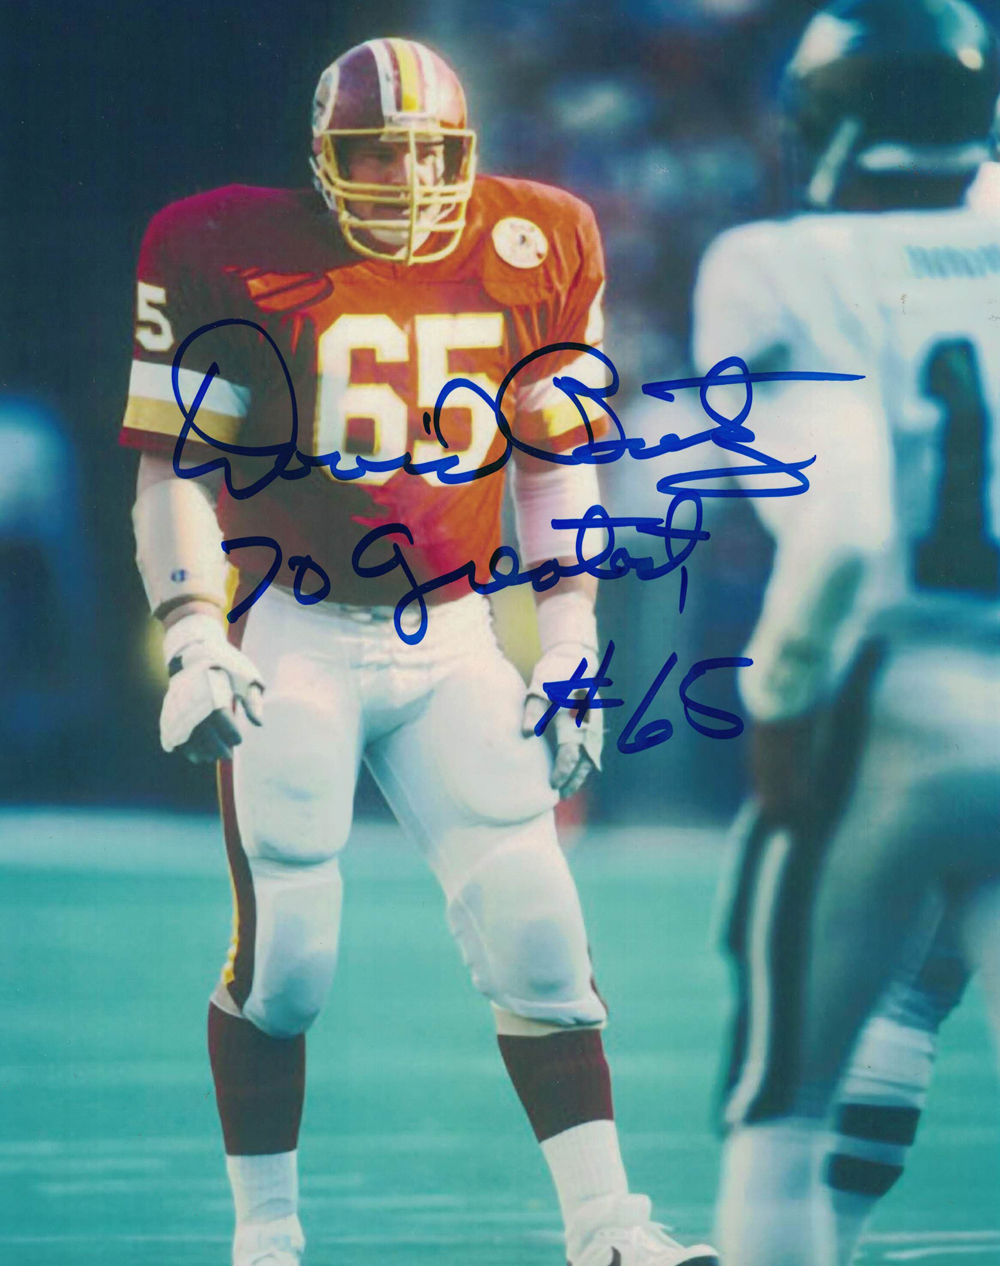 Dave Butz Autographed/Signed Washington Redskins 8x10 Photo 70 Greatest 27808